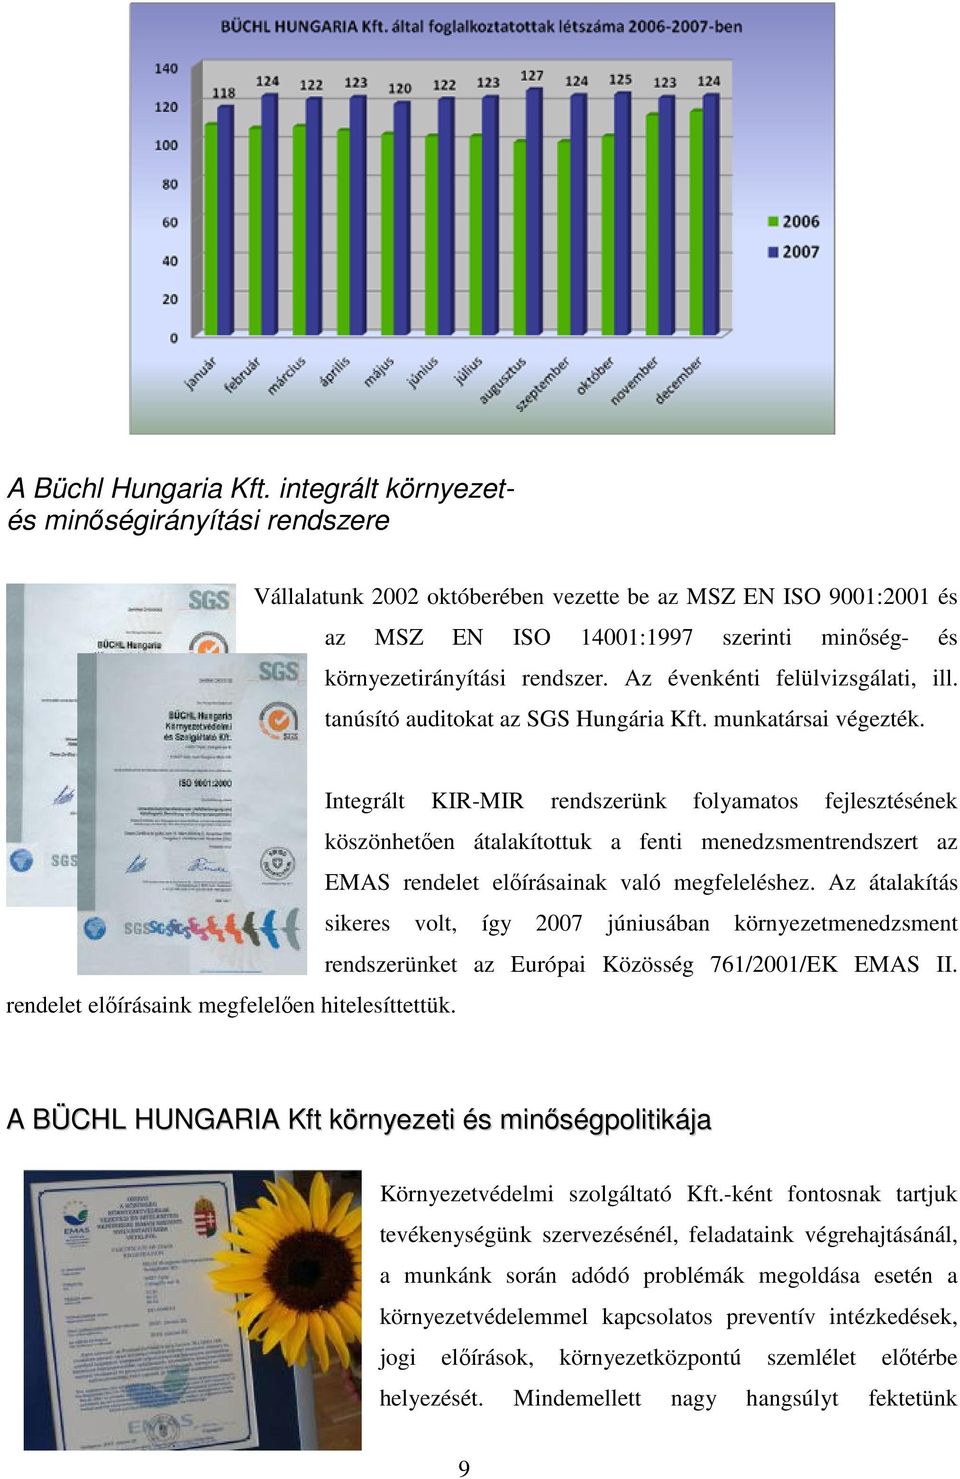 Az évenkénti felülvizsgálati, ill. tanúsító auditokat az SGS Hungária Kft. munkatársai végezték.